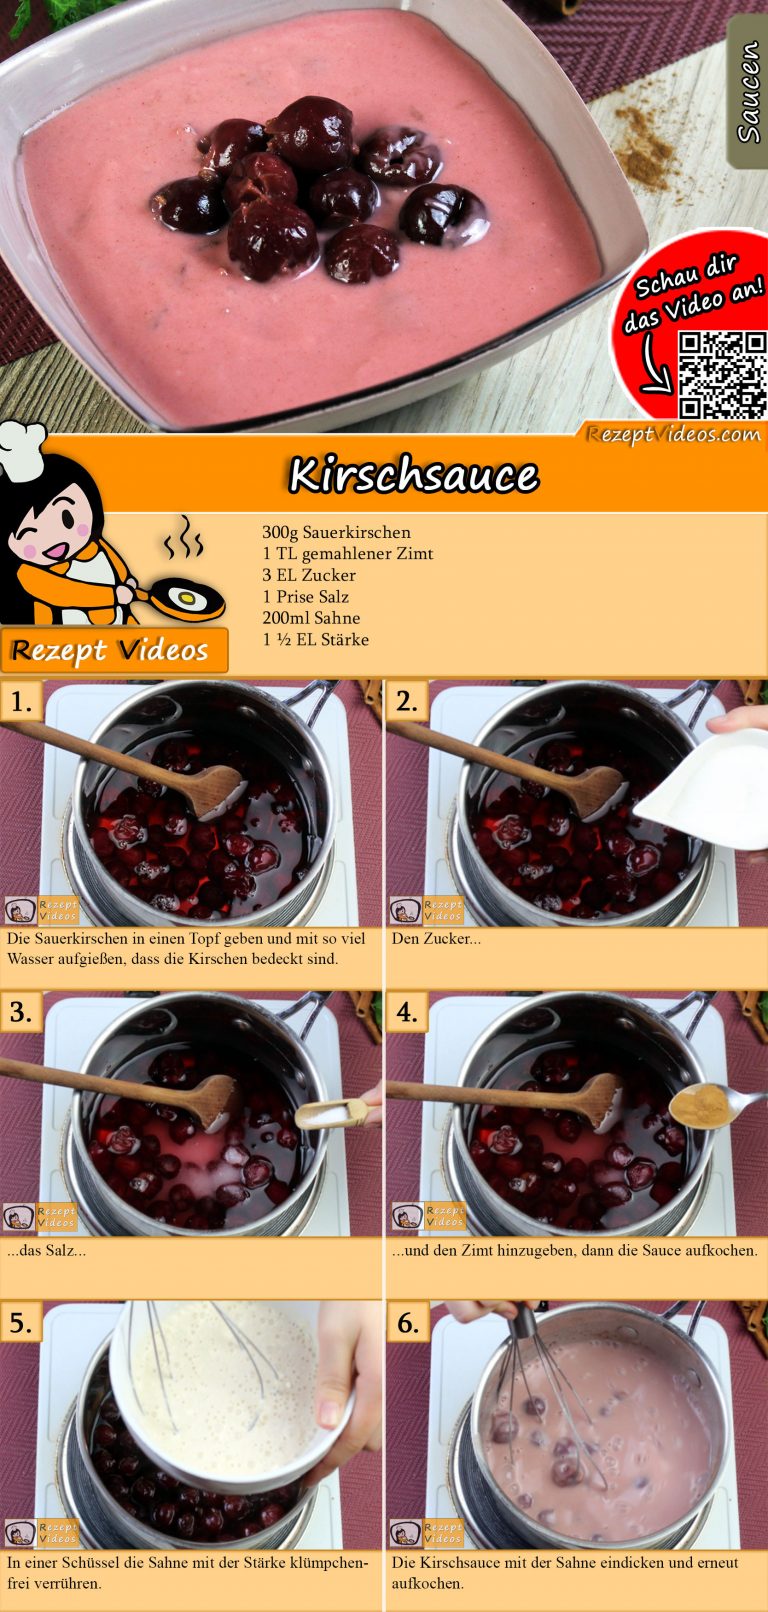 Kirschsauce Rezept mit Video - Saucen Rezepte/ Kirschen Rezepte